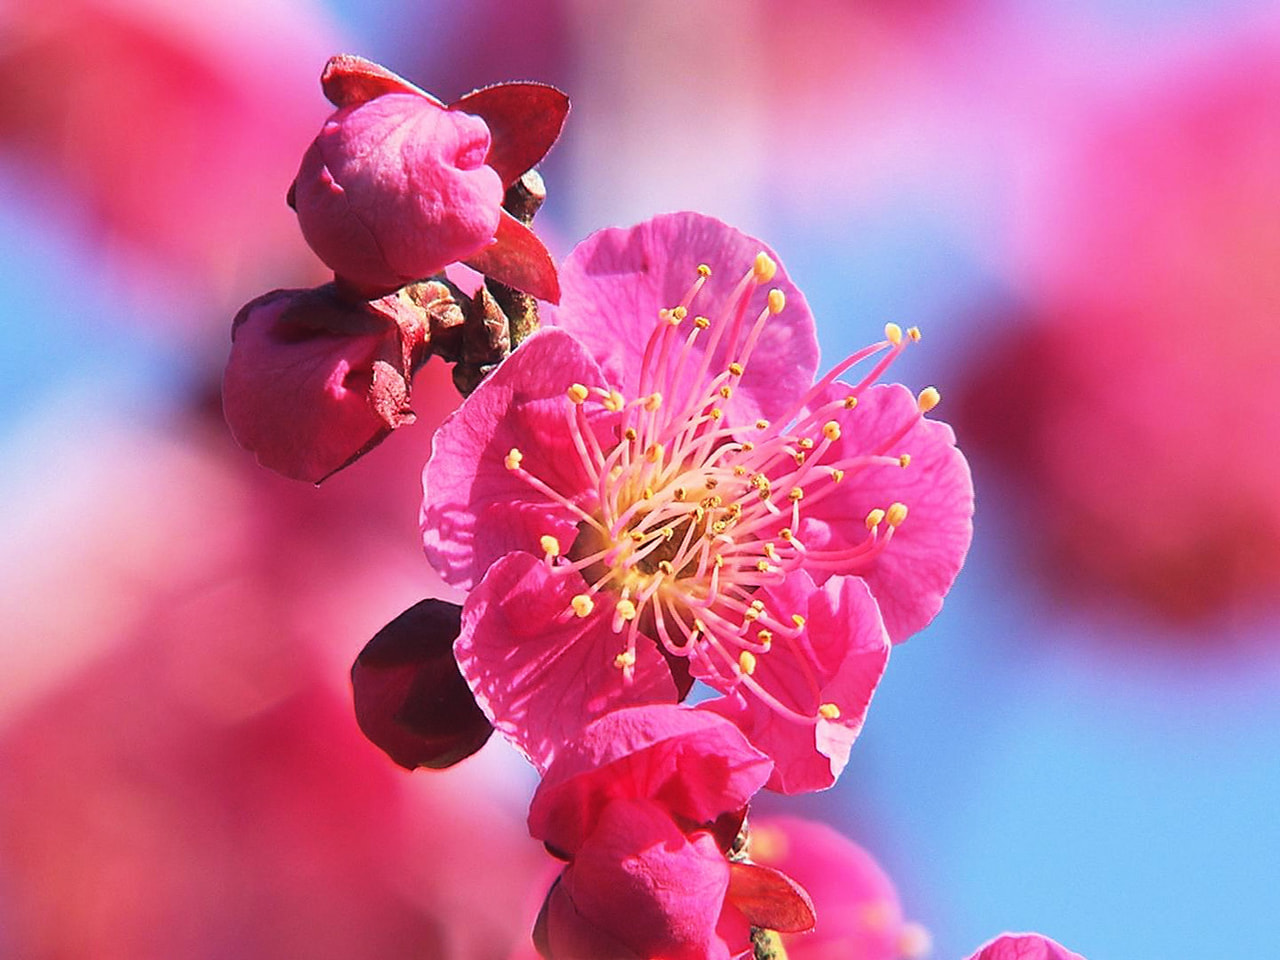 安八郡安八町の観光名所「安八百梅園」で梅の花が見ごろを迎え春の訪れを告げています...